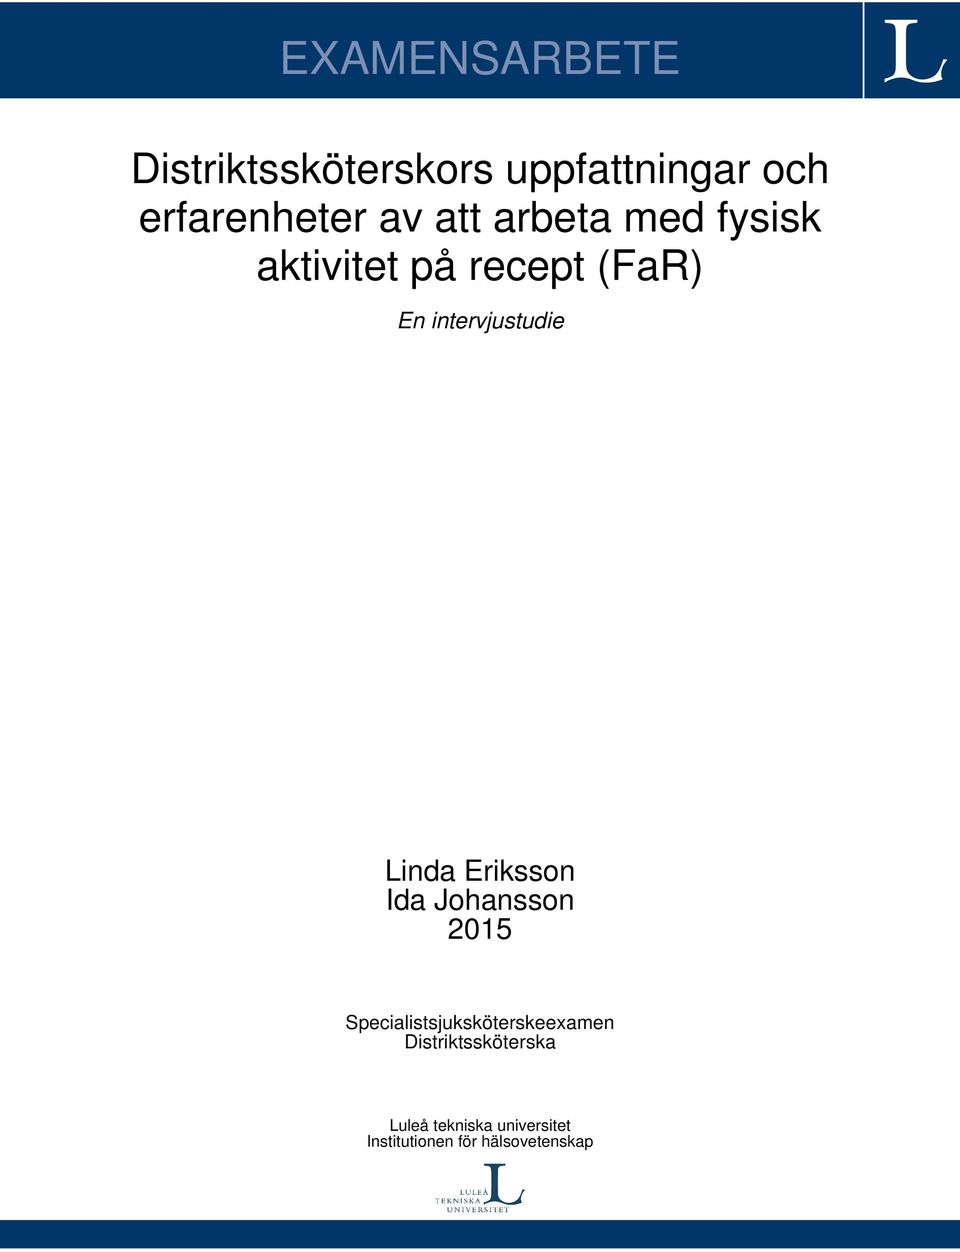 Linda Eriksson Ida Johansson 2015 Specialistsjuksköterskeexamen